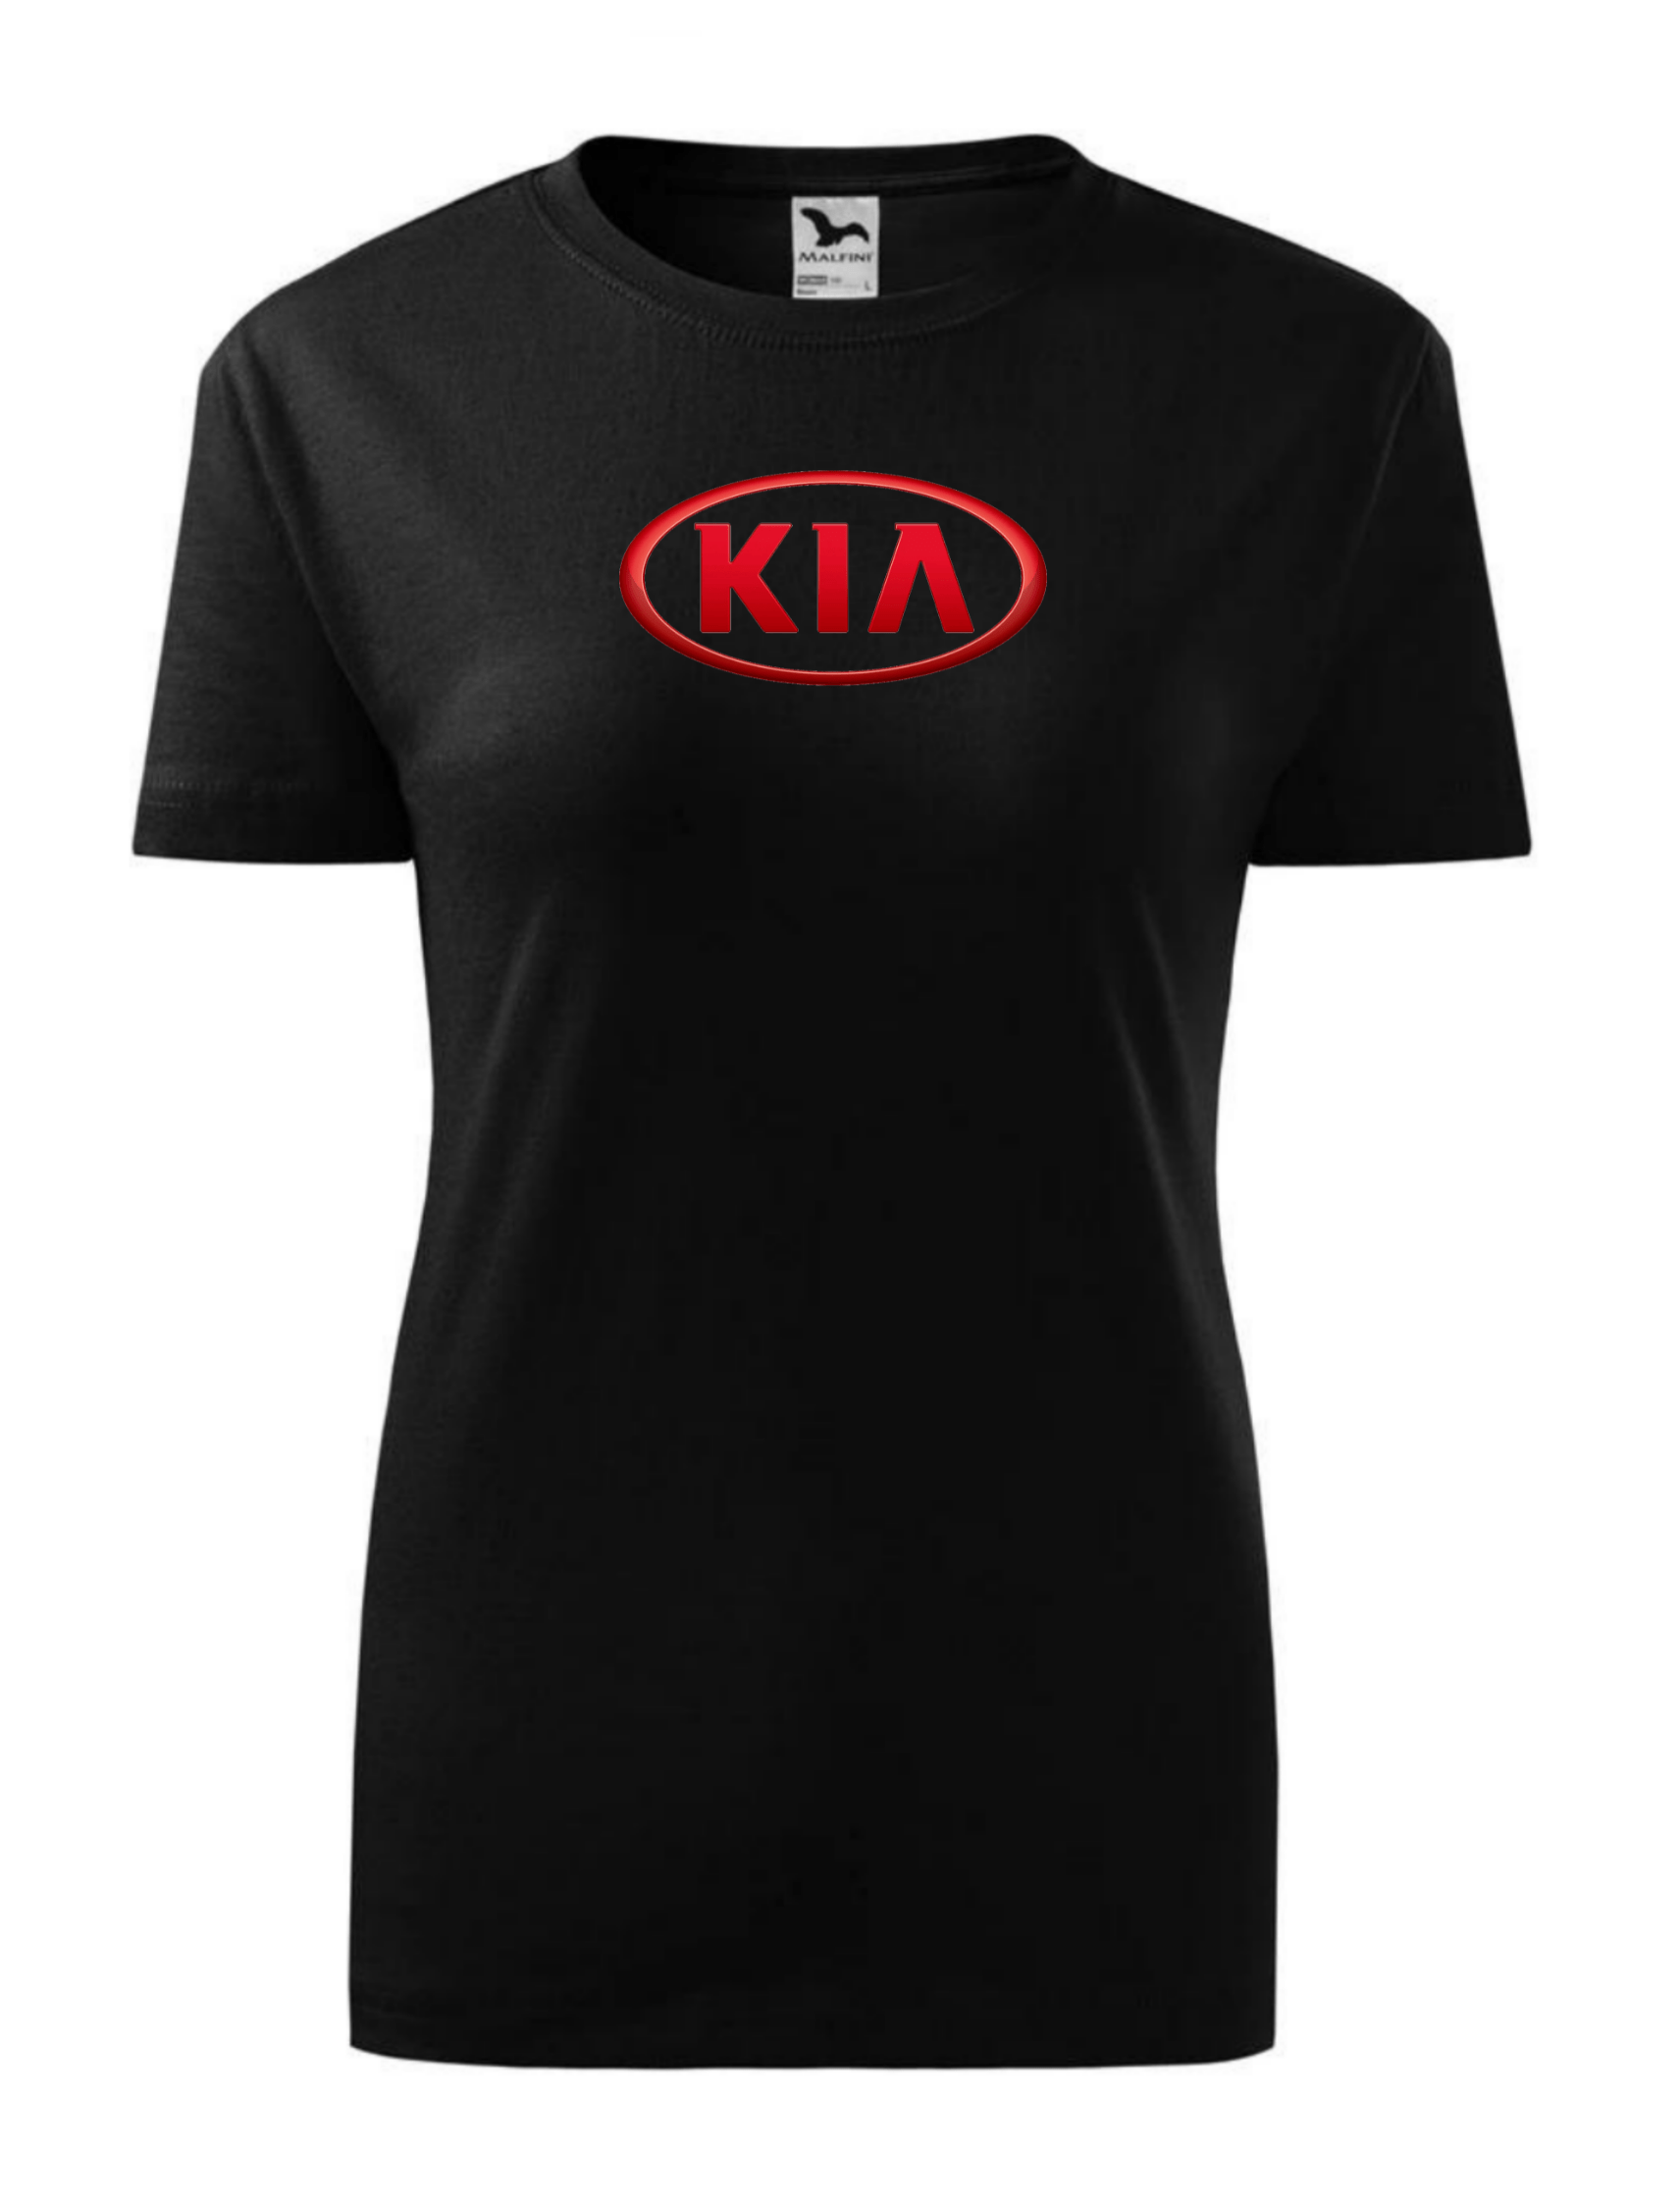 Dámské tričko s potiskem značky Kia